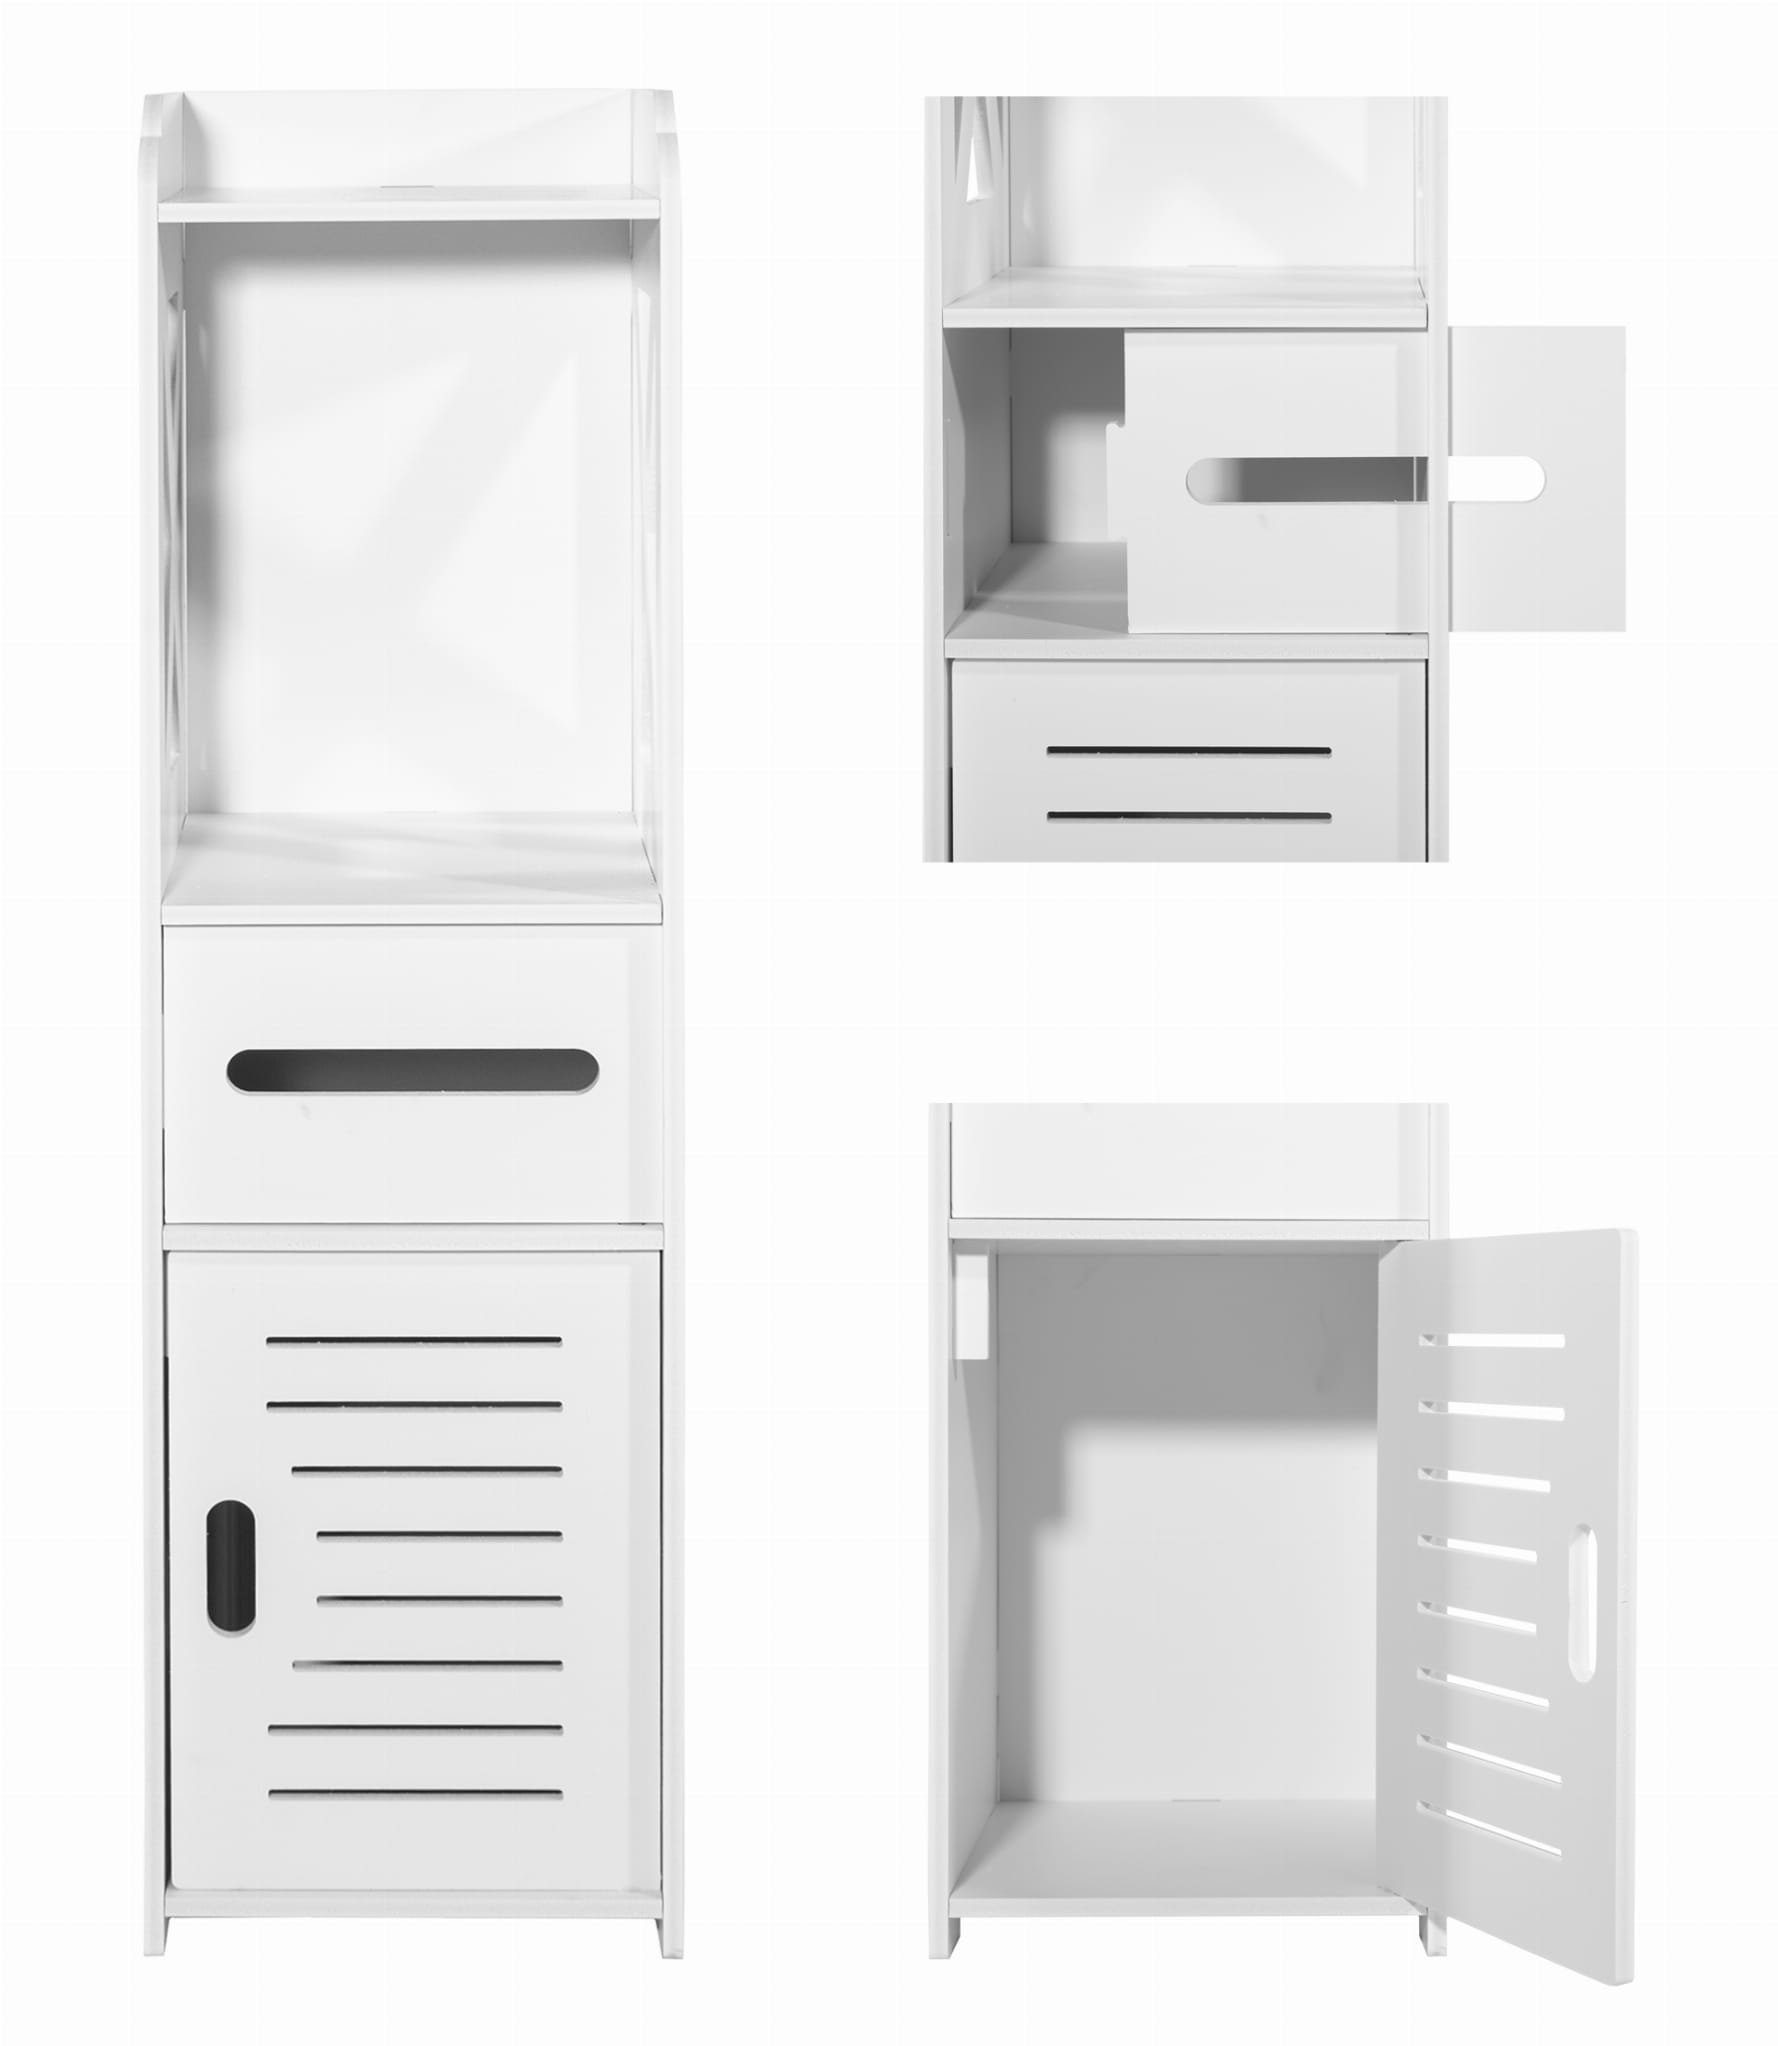 Home Collective Hochschrank Badezimmerschrank, Platzsparend, Schmal, Papierfach, Schrank für Bad 25 x 22 x 80 cm, mit 4 geräumigen Regalen, in weiß